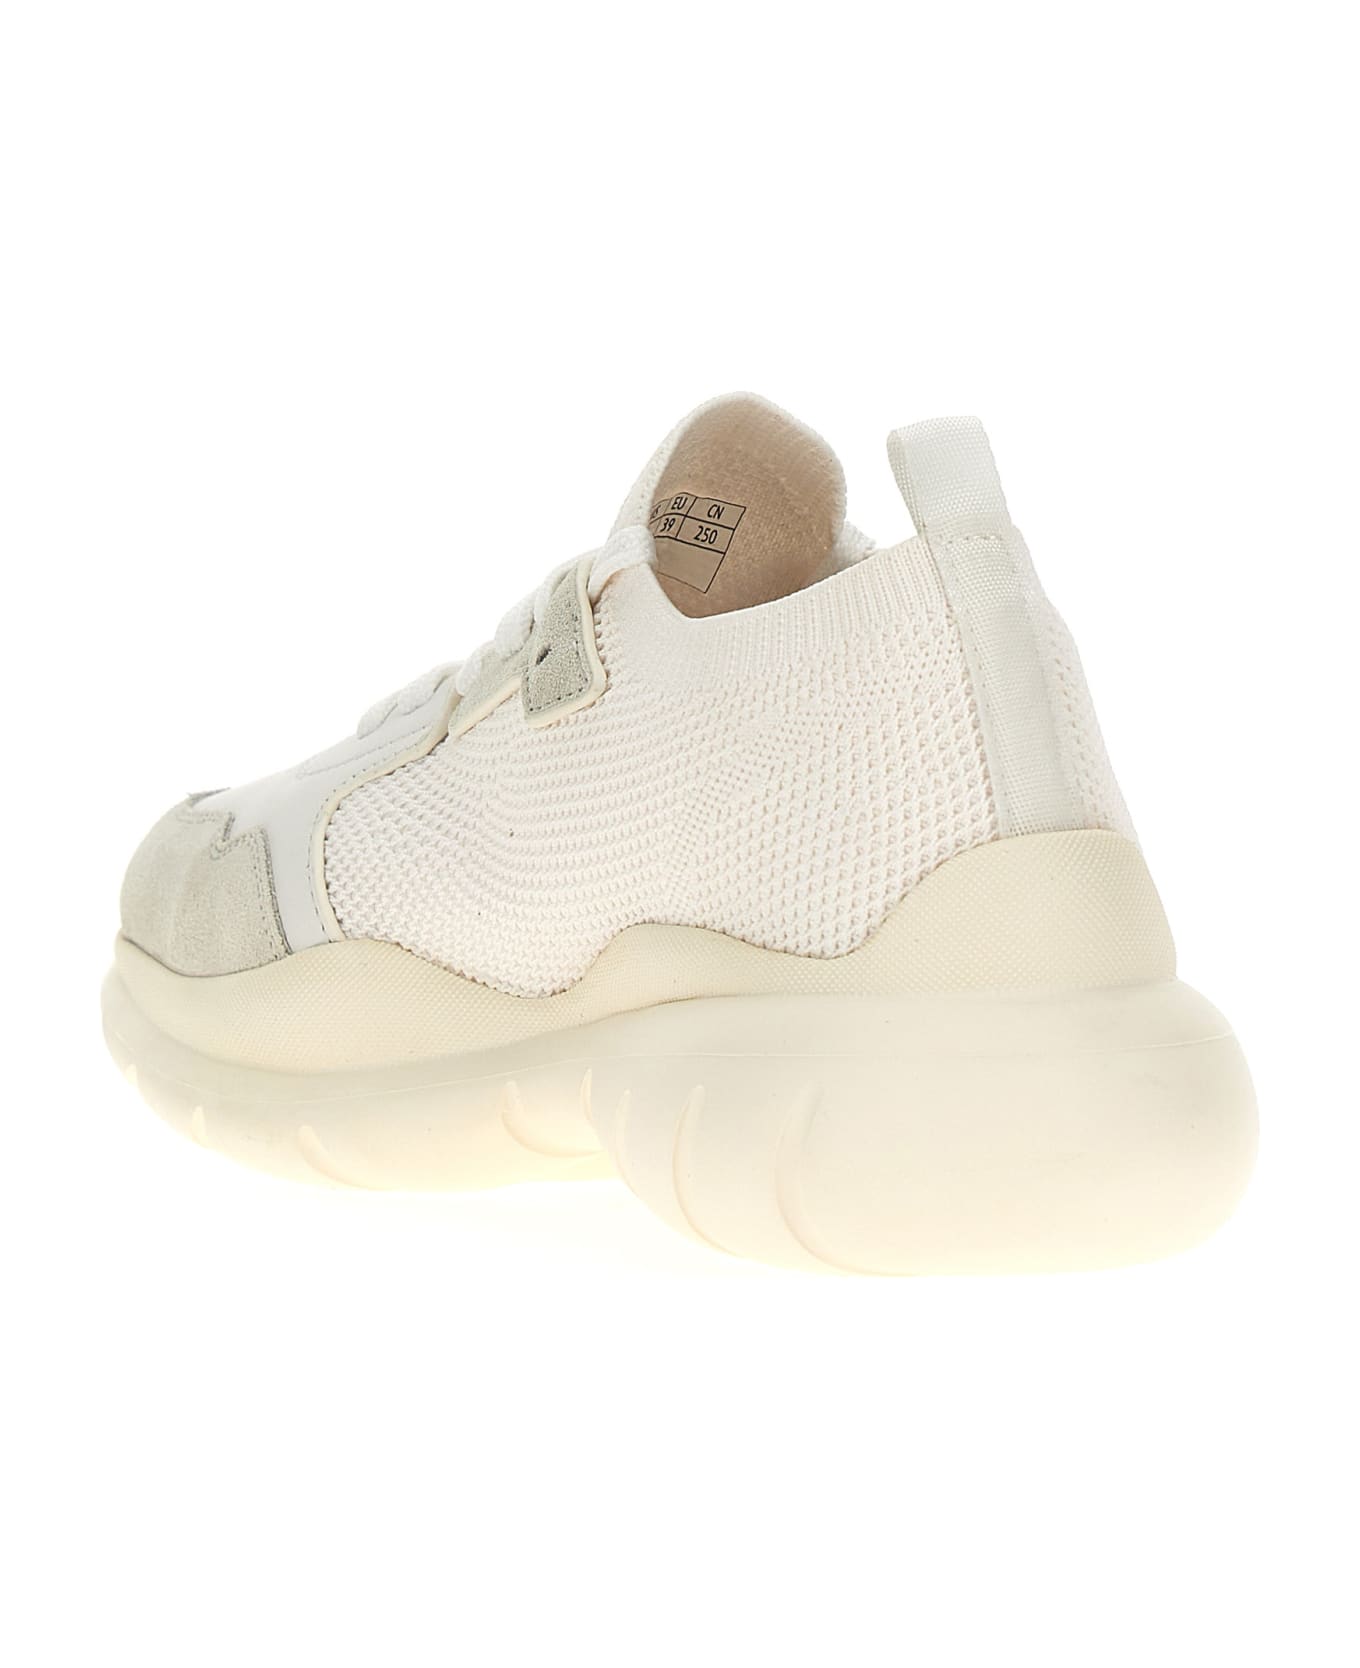 Stuart Weitzman '50/50' Sneakers - White